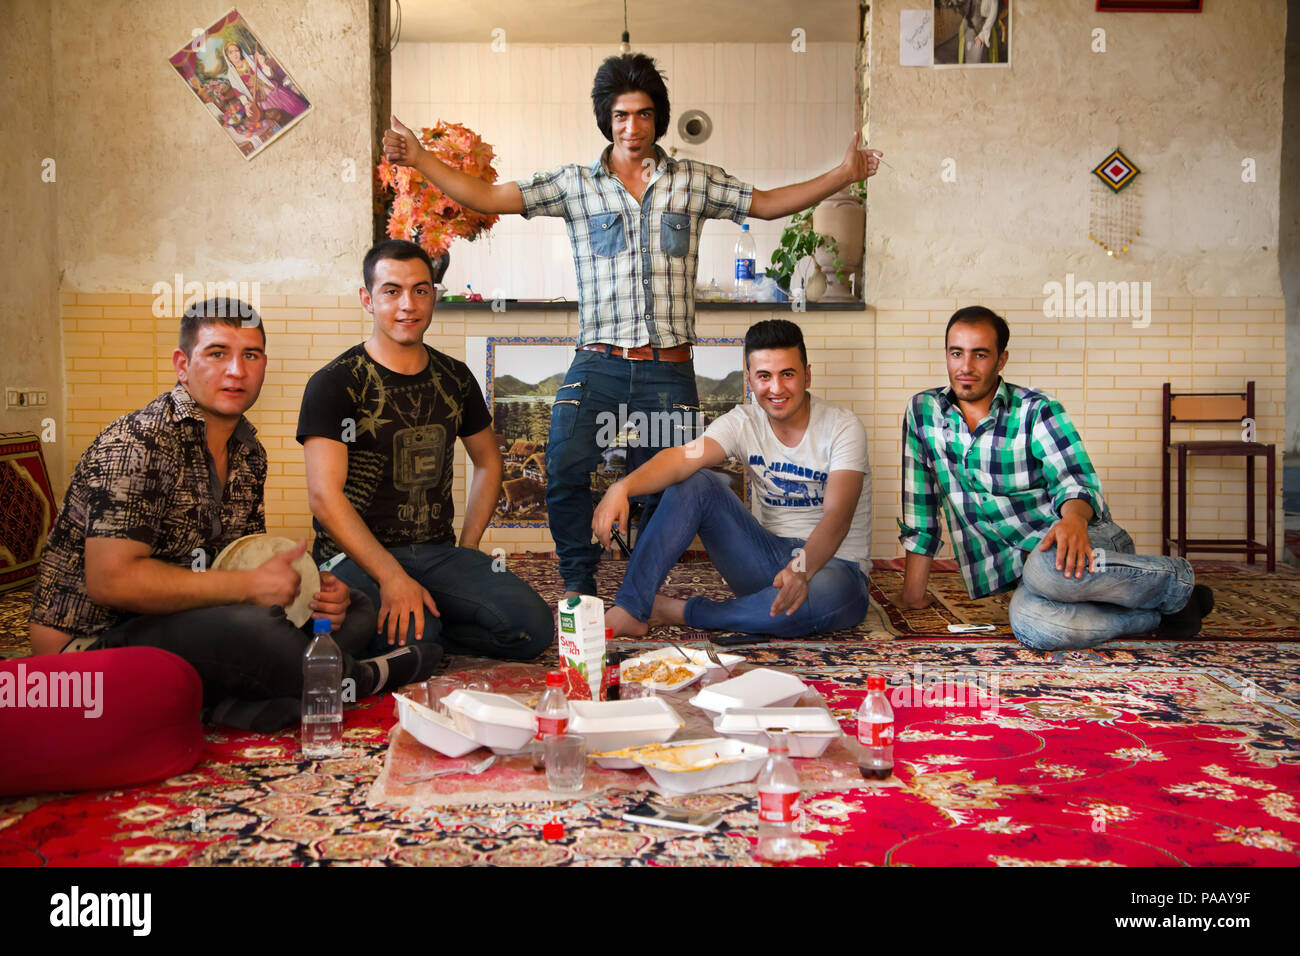 Qashqai chicos jóvenes que viven en una ciudad moderna con ropa de moda, pueblo nómade, Irán Foto de stock